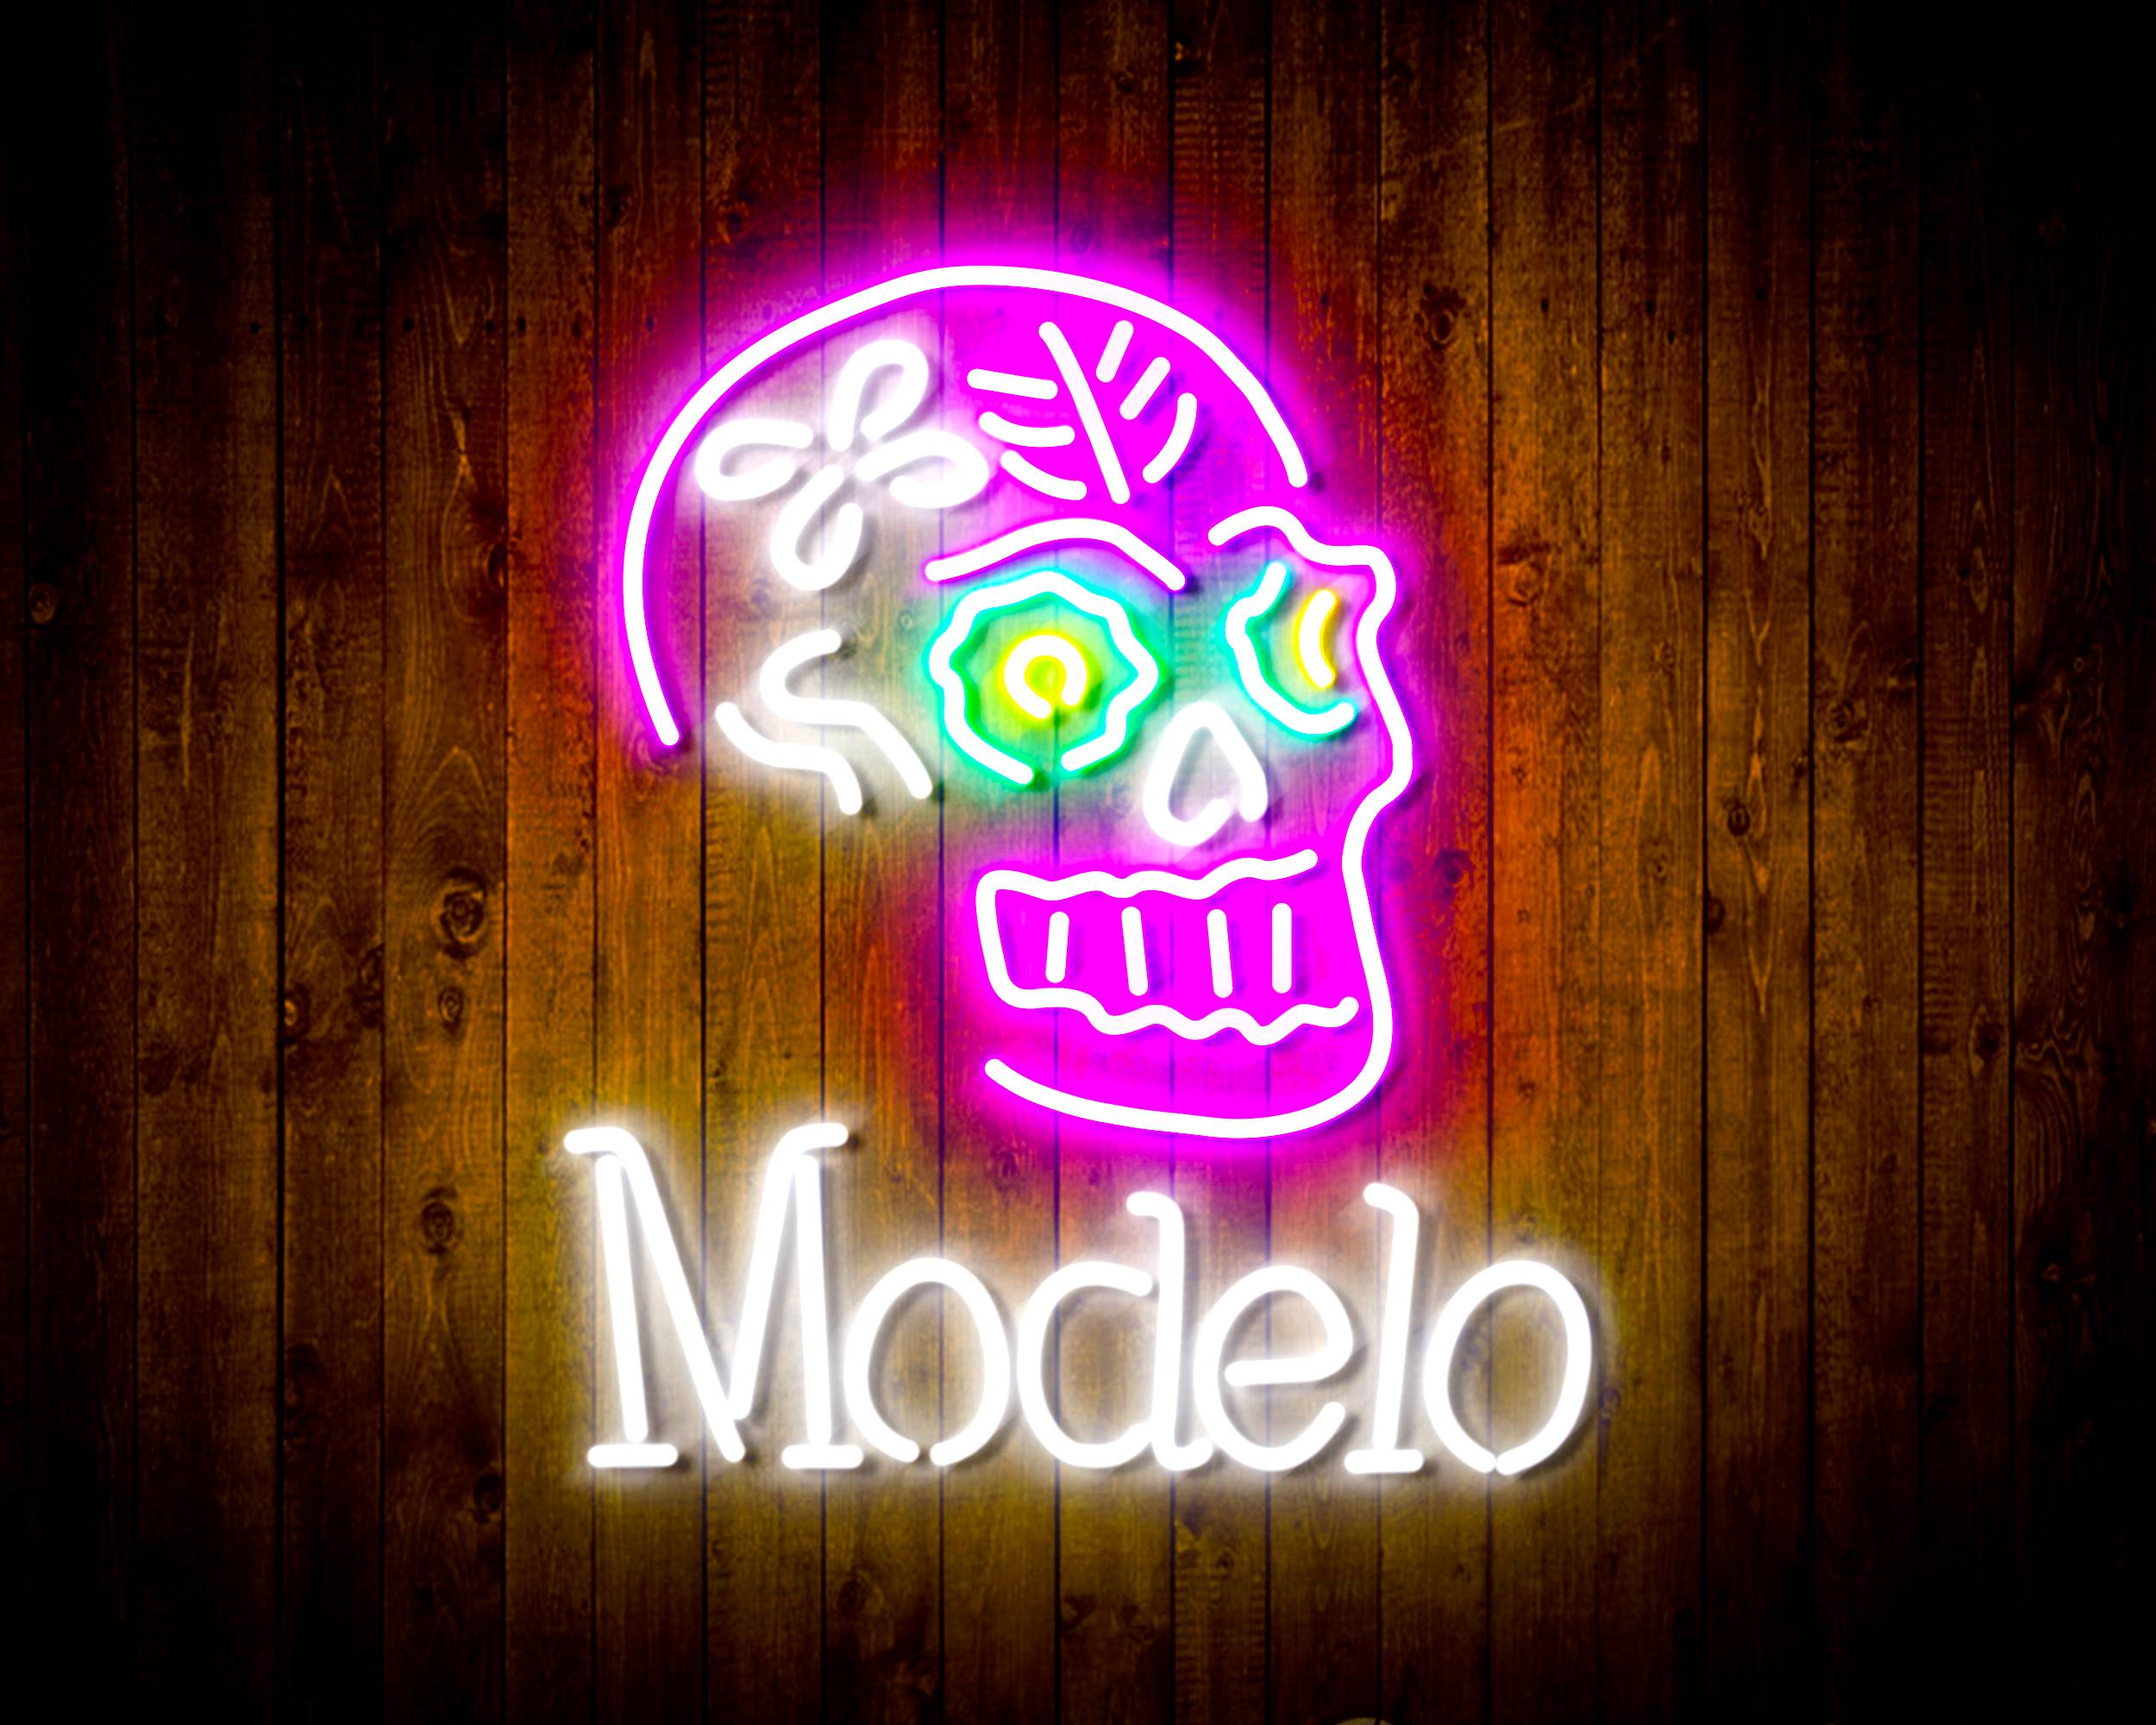 Modelo Beer with Skull Handmade LED Neon Light Sign